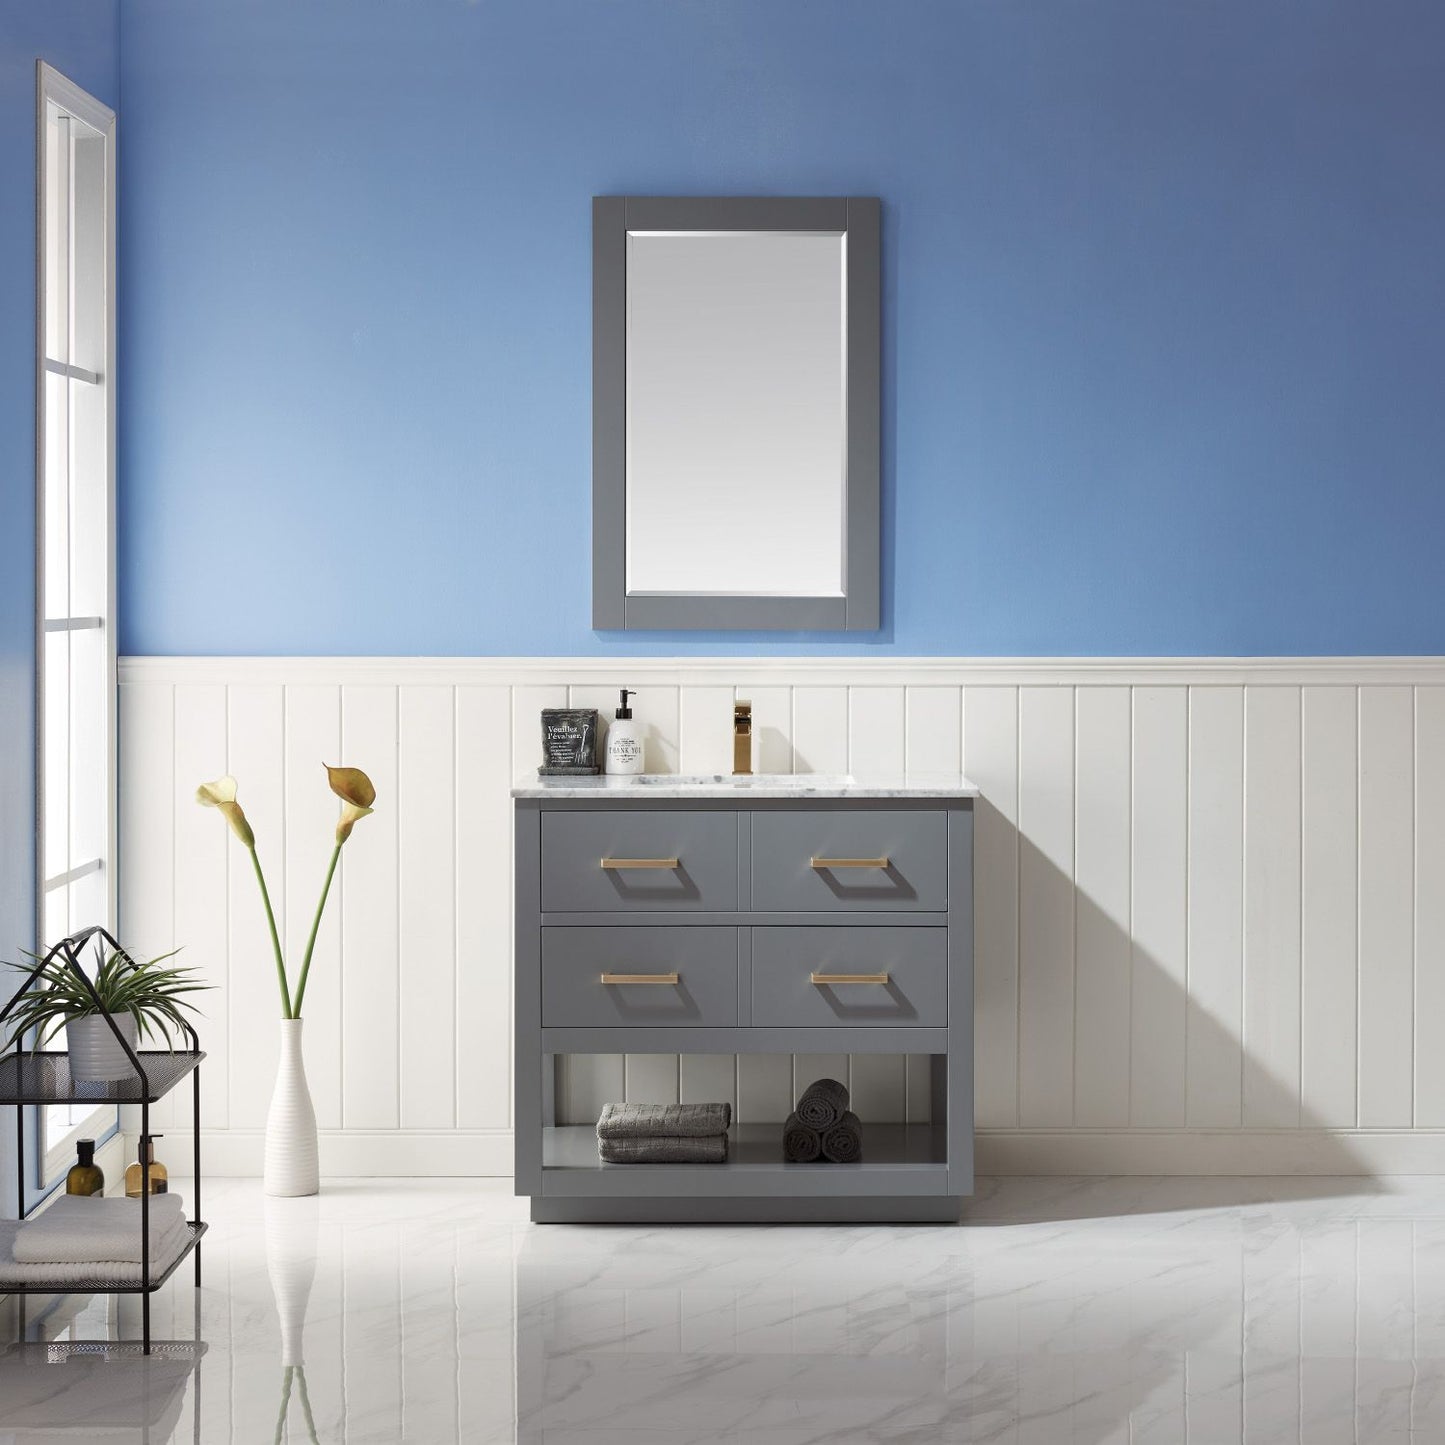 Altair Remi 36" Single Bathroom Vanity Set Countertop with Mirror - Luxe Bathroom Vanities